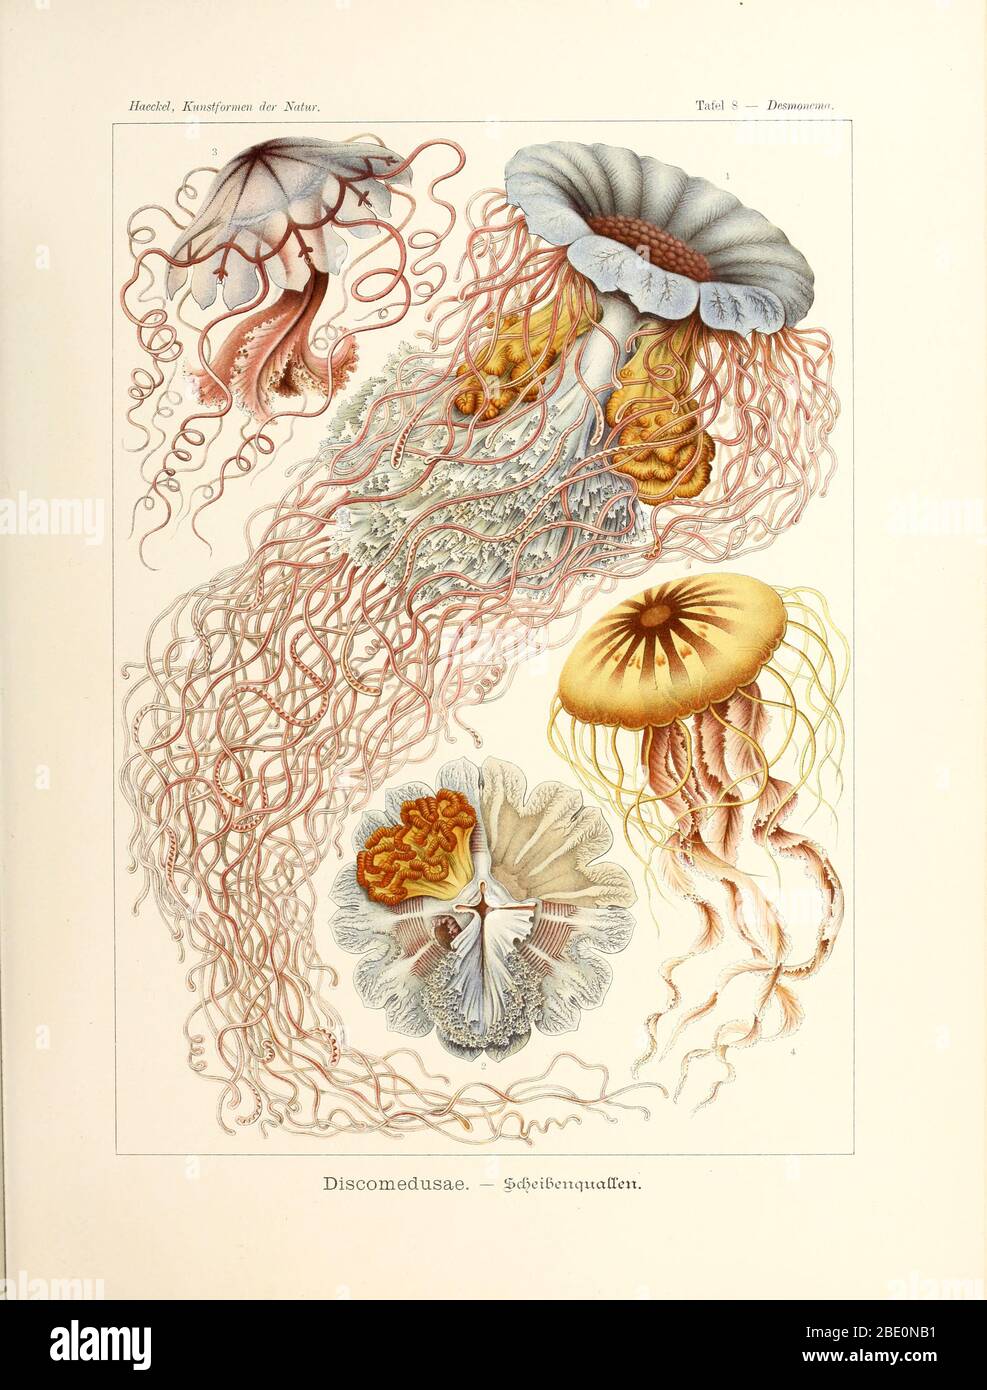 Discomedusae (all semaeostomids), from Ernst Haeckel's Kunstformen der Natur, 1904 Stock Photo